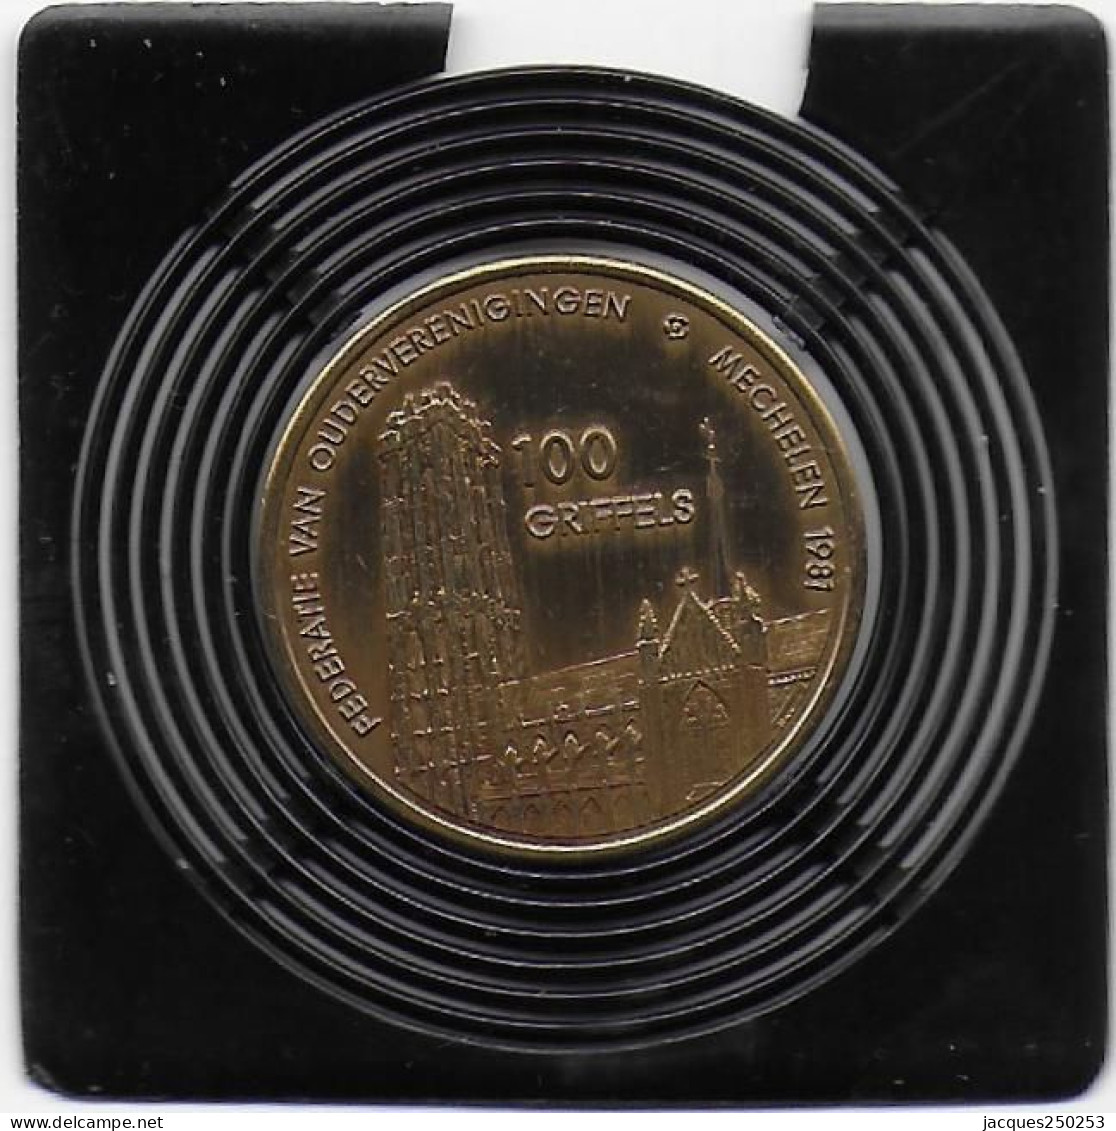 100 GRIFFELS 1981 MECHELEM - Gemeindemünzmarken